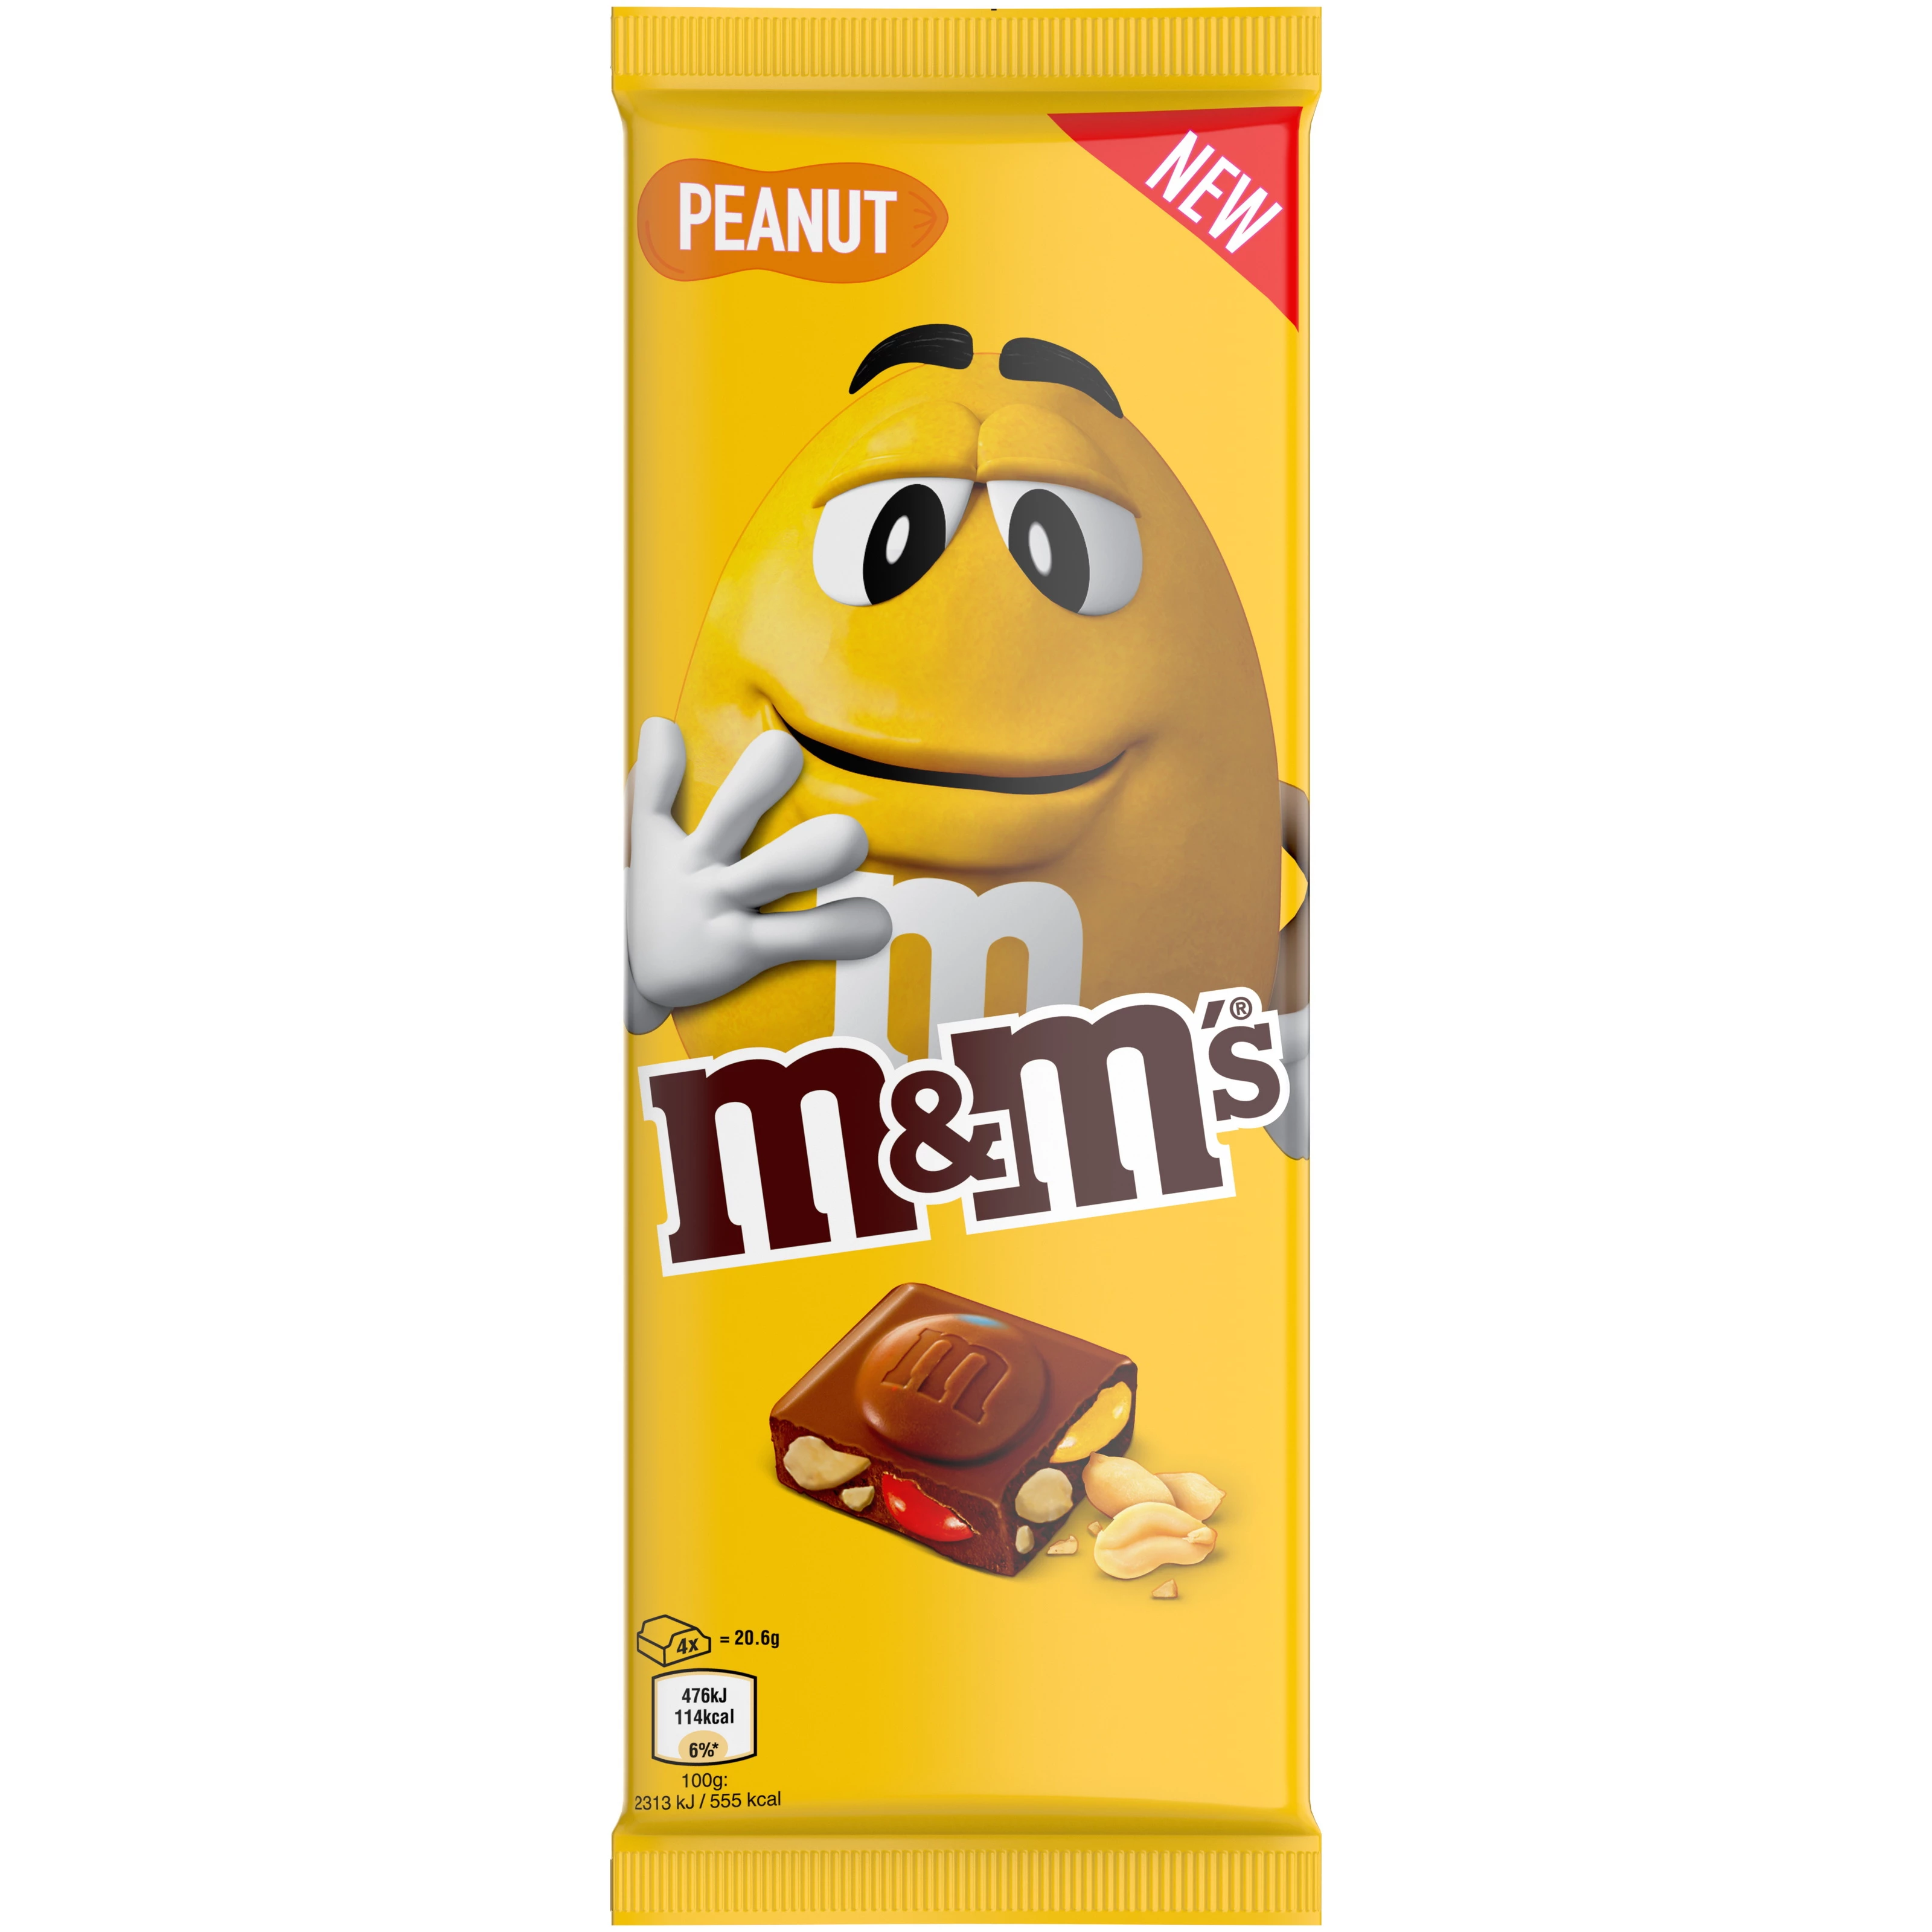 Tablette M M S Peanut, 165g - M&M's